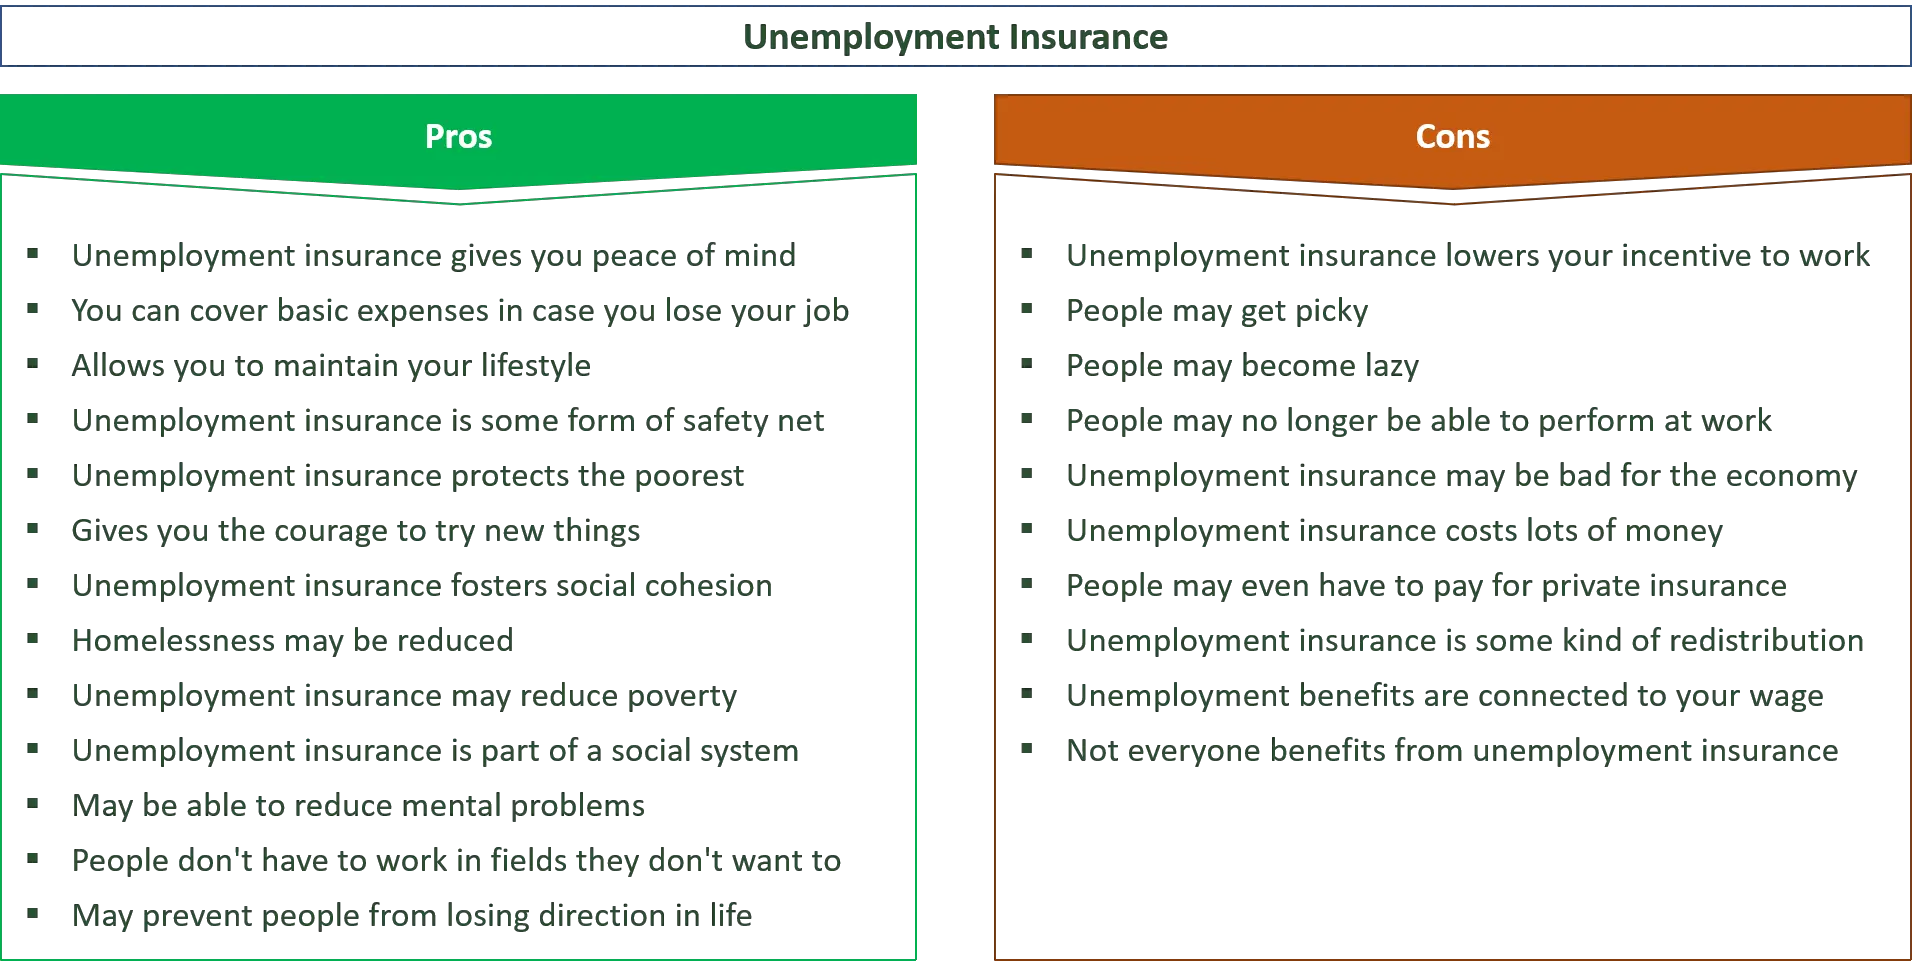 advantages and disadvantages of unemployment insurance